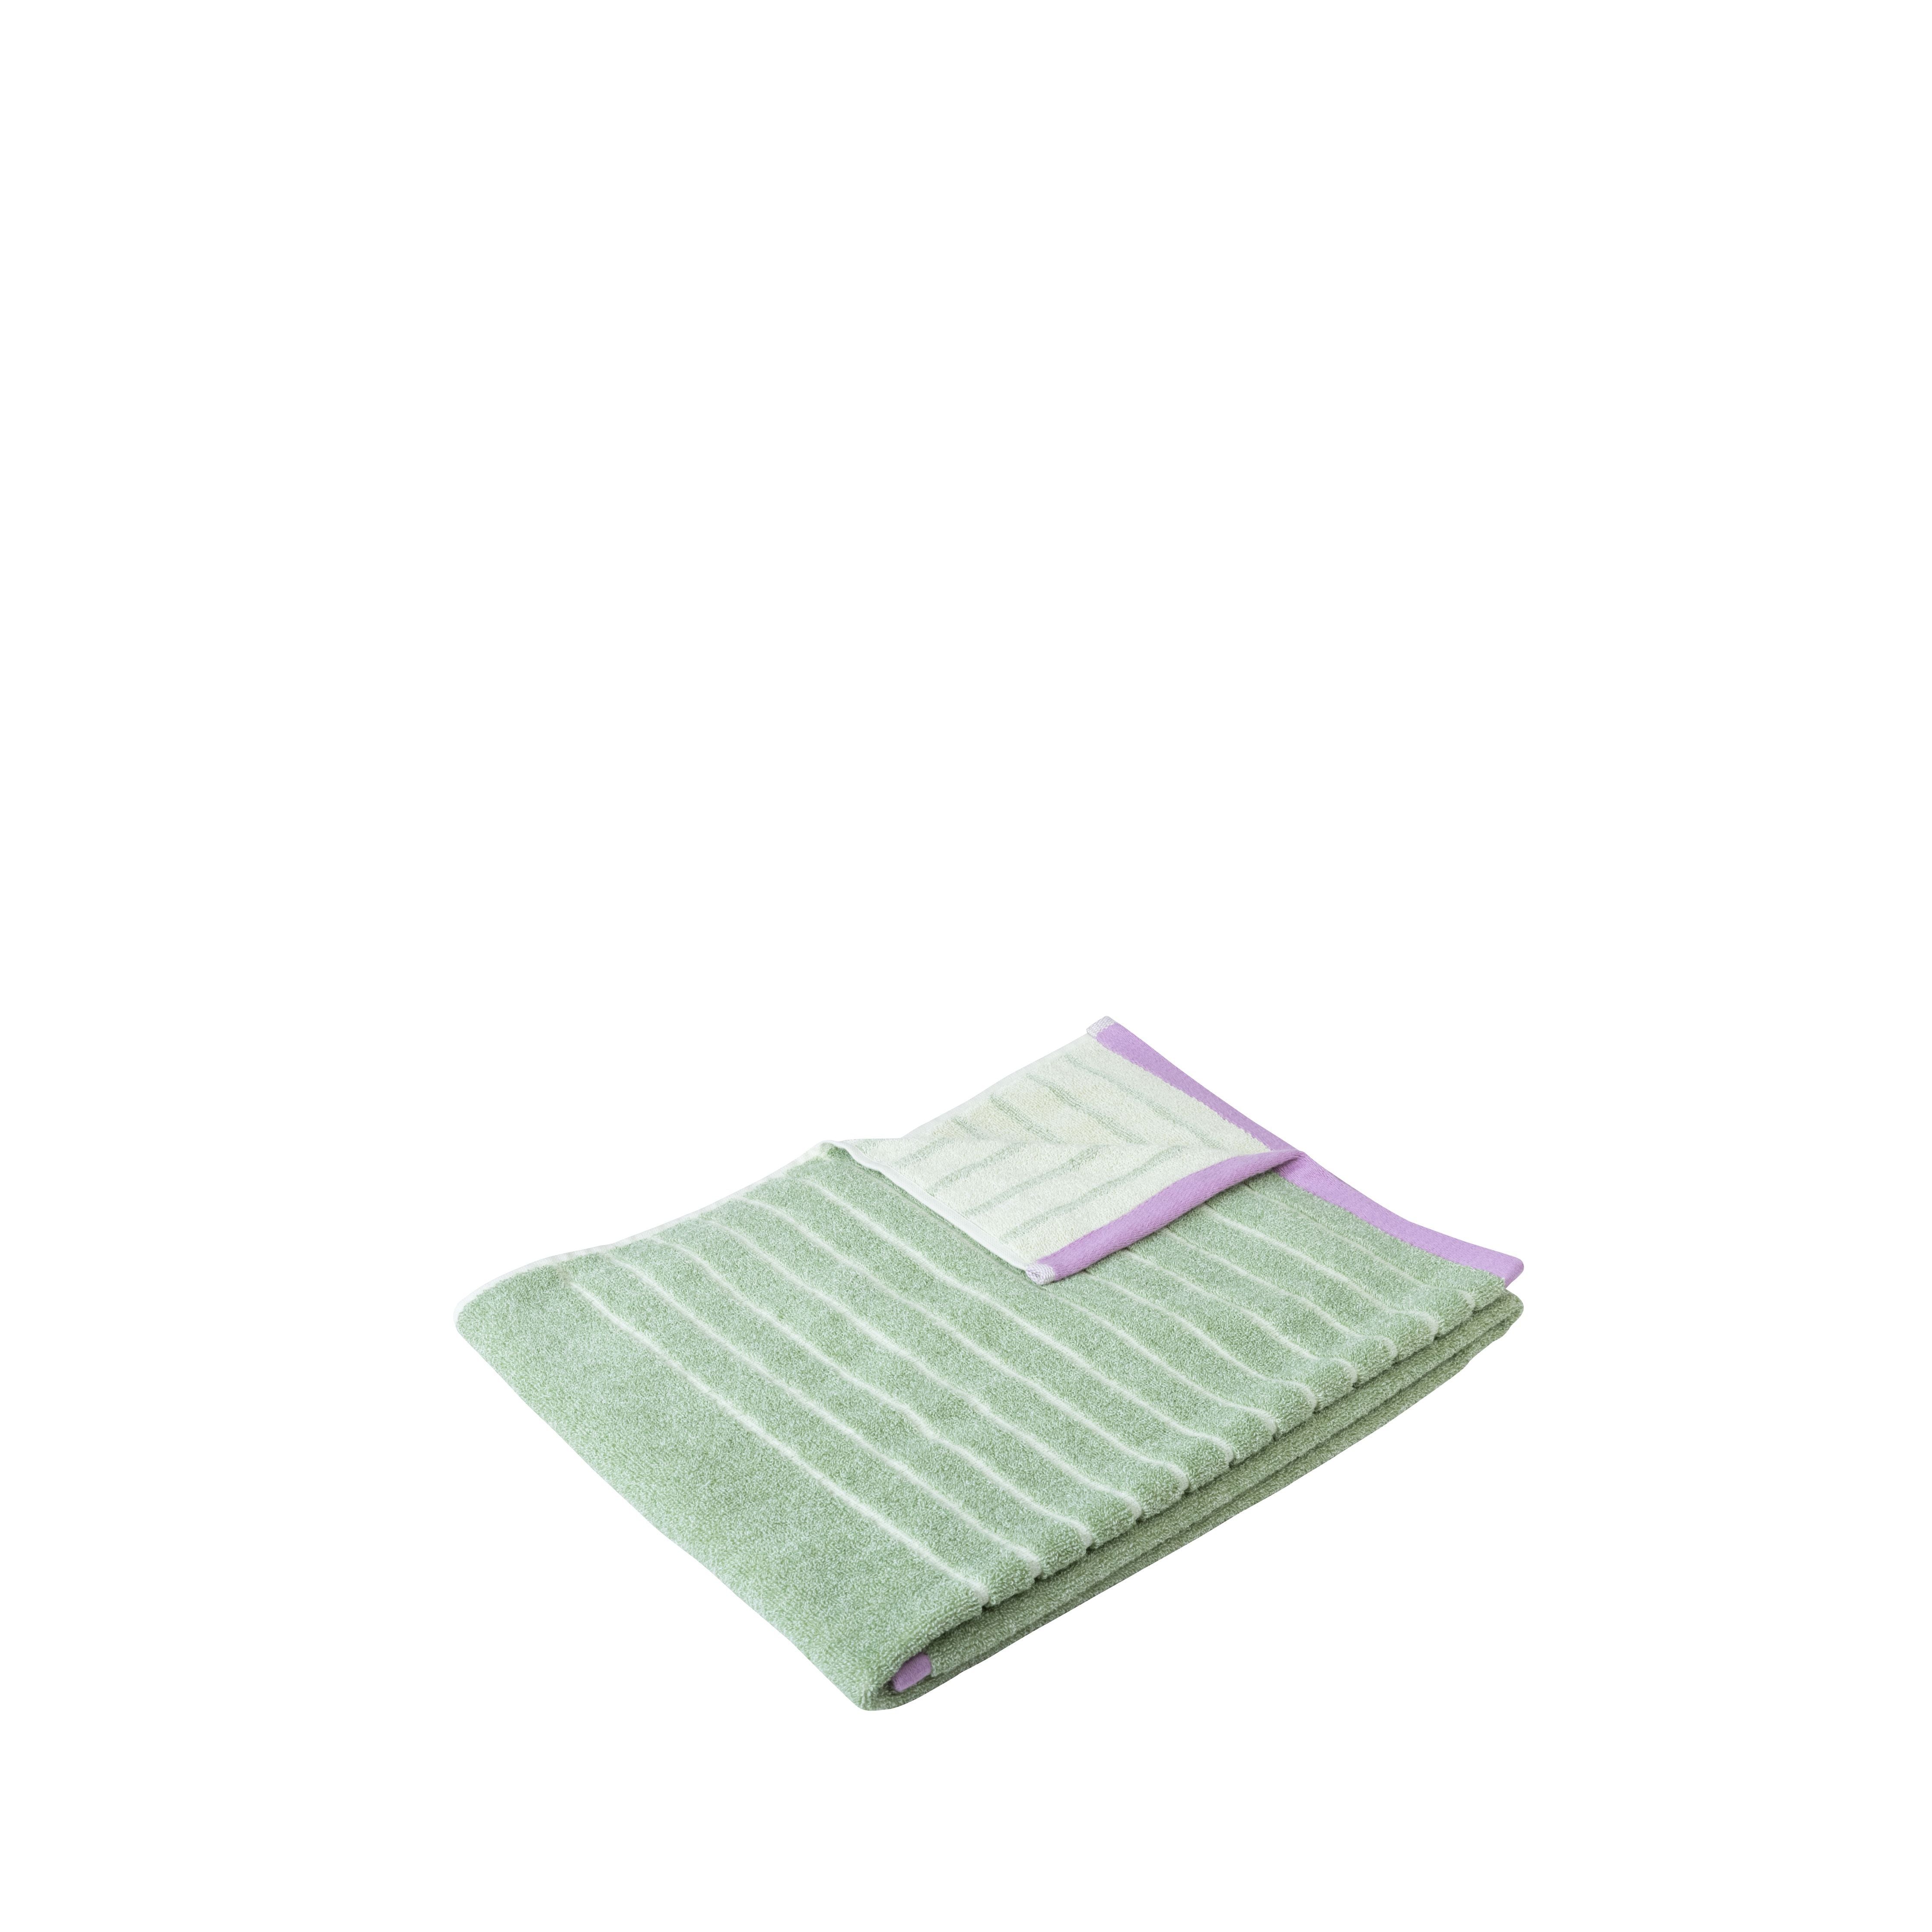 Hübsch Promenade Towel Small, Green/Pink